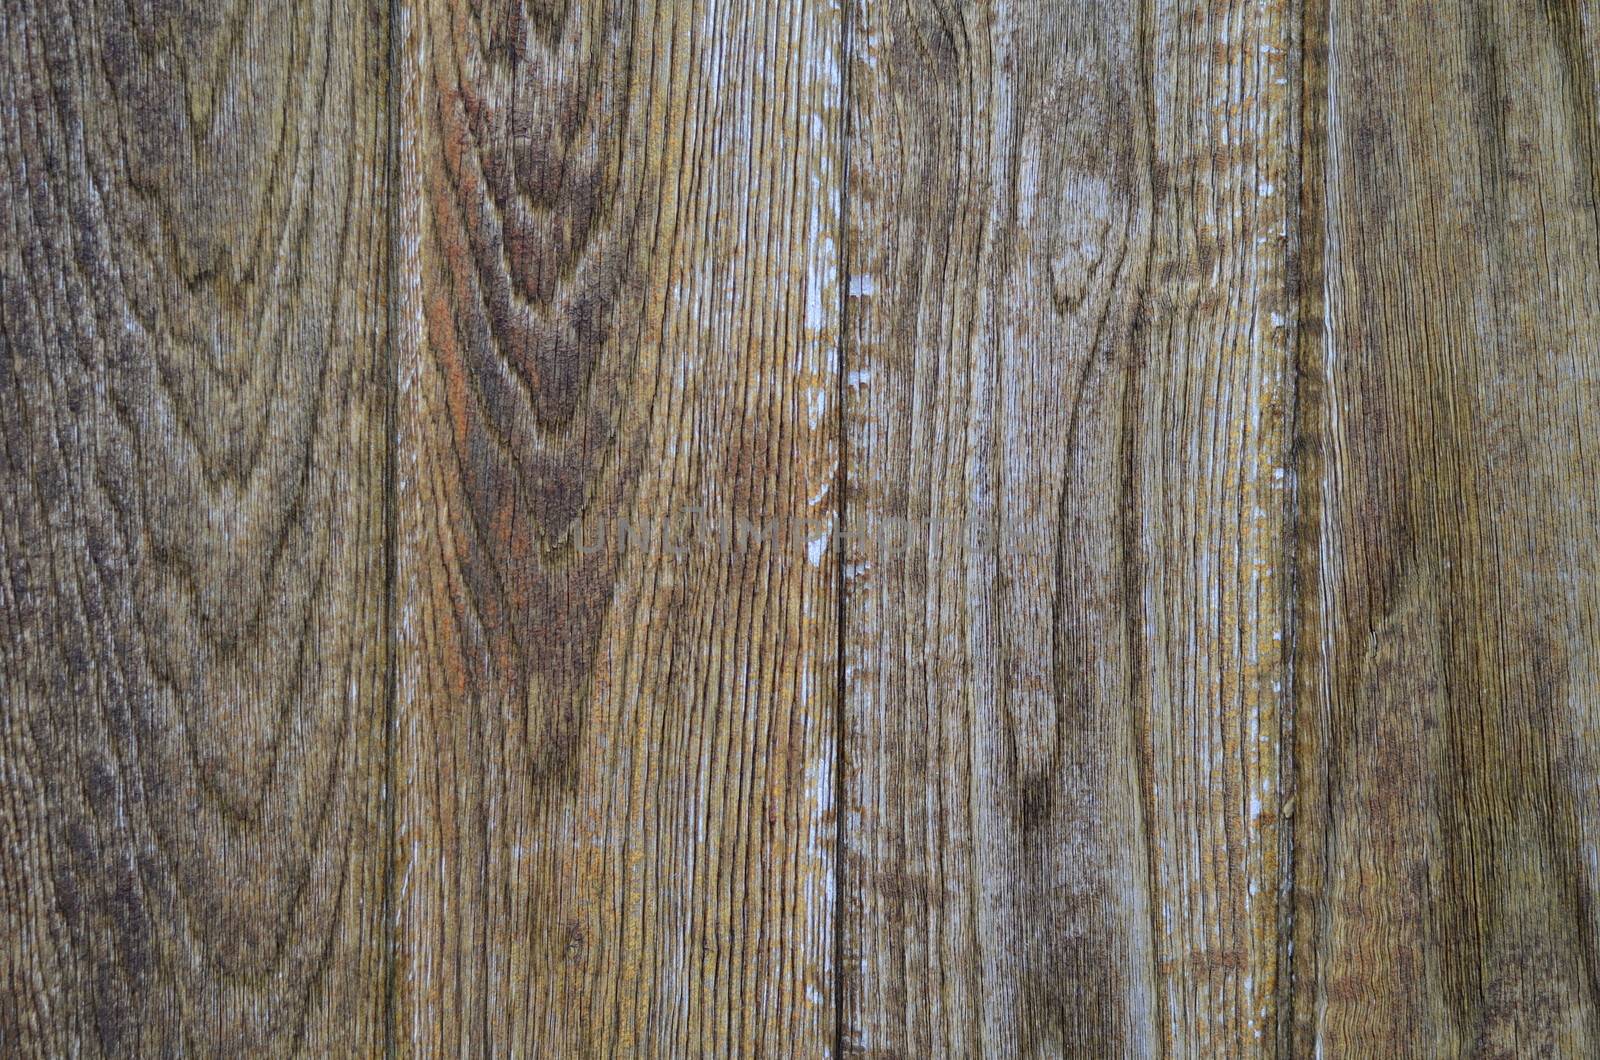 Background Texture Of A Heavy Wooden Door